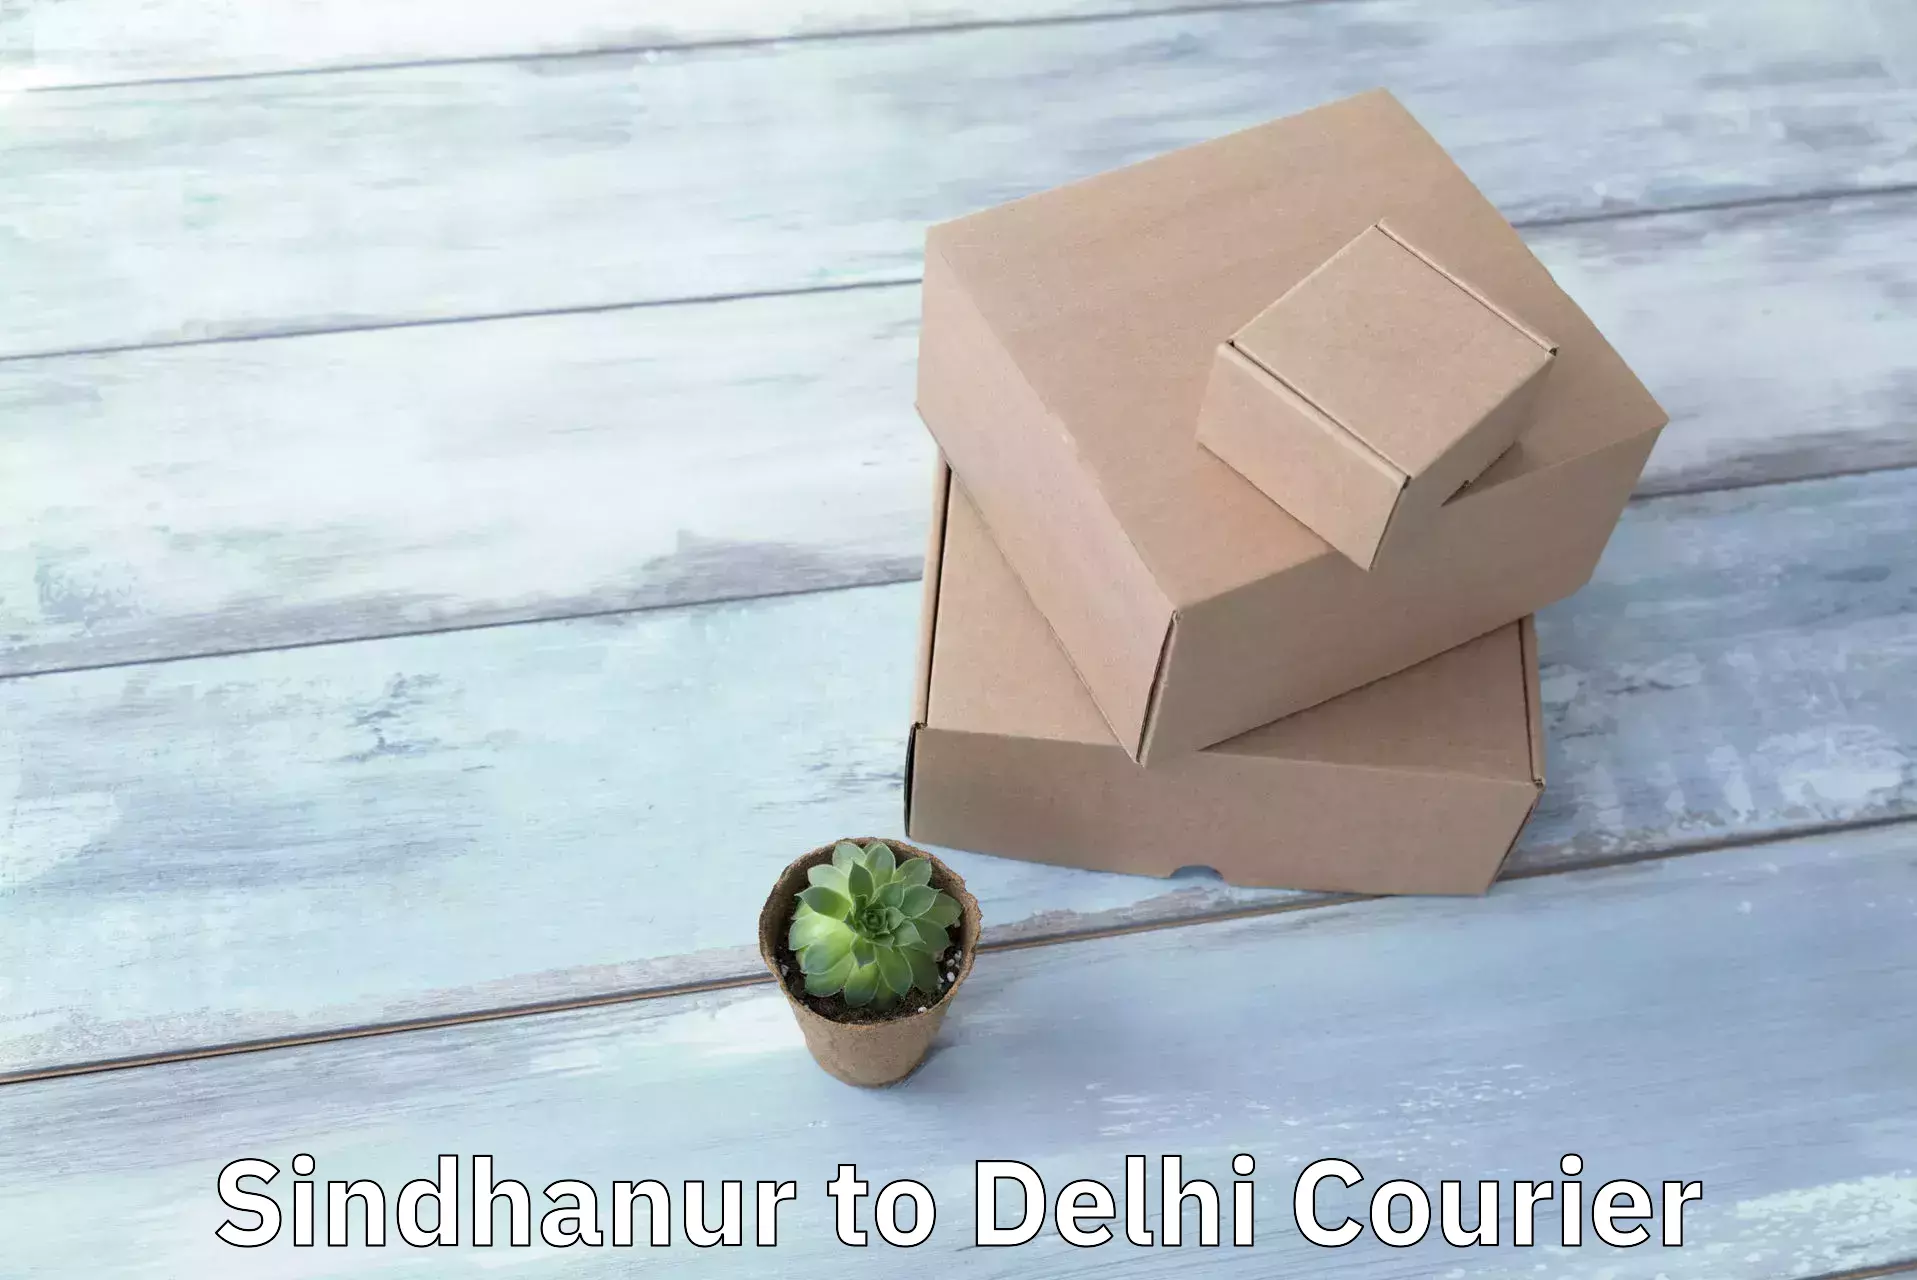 Regular parcel service Sindhanur to Delhi